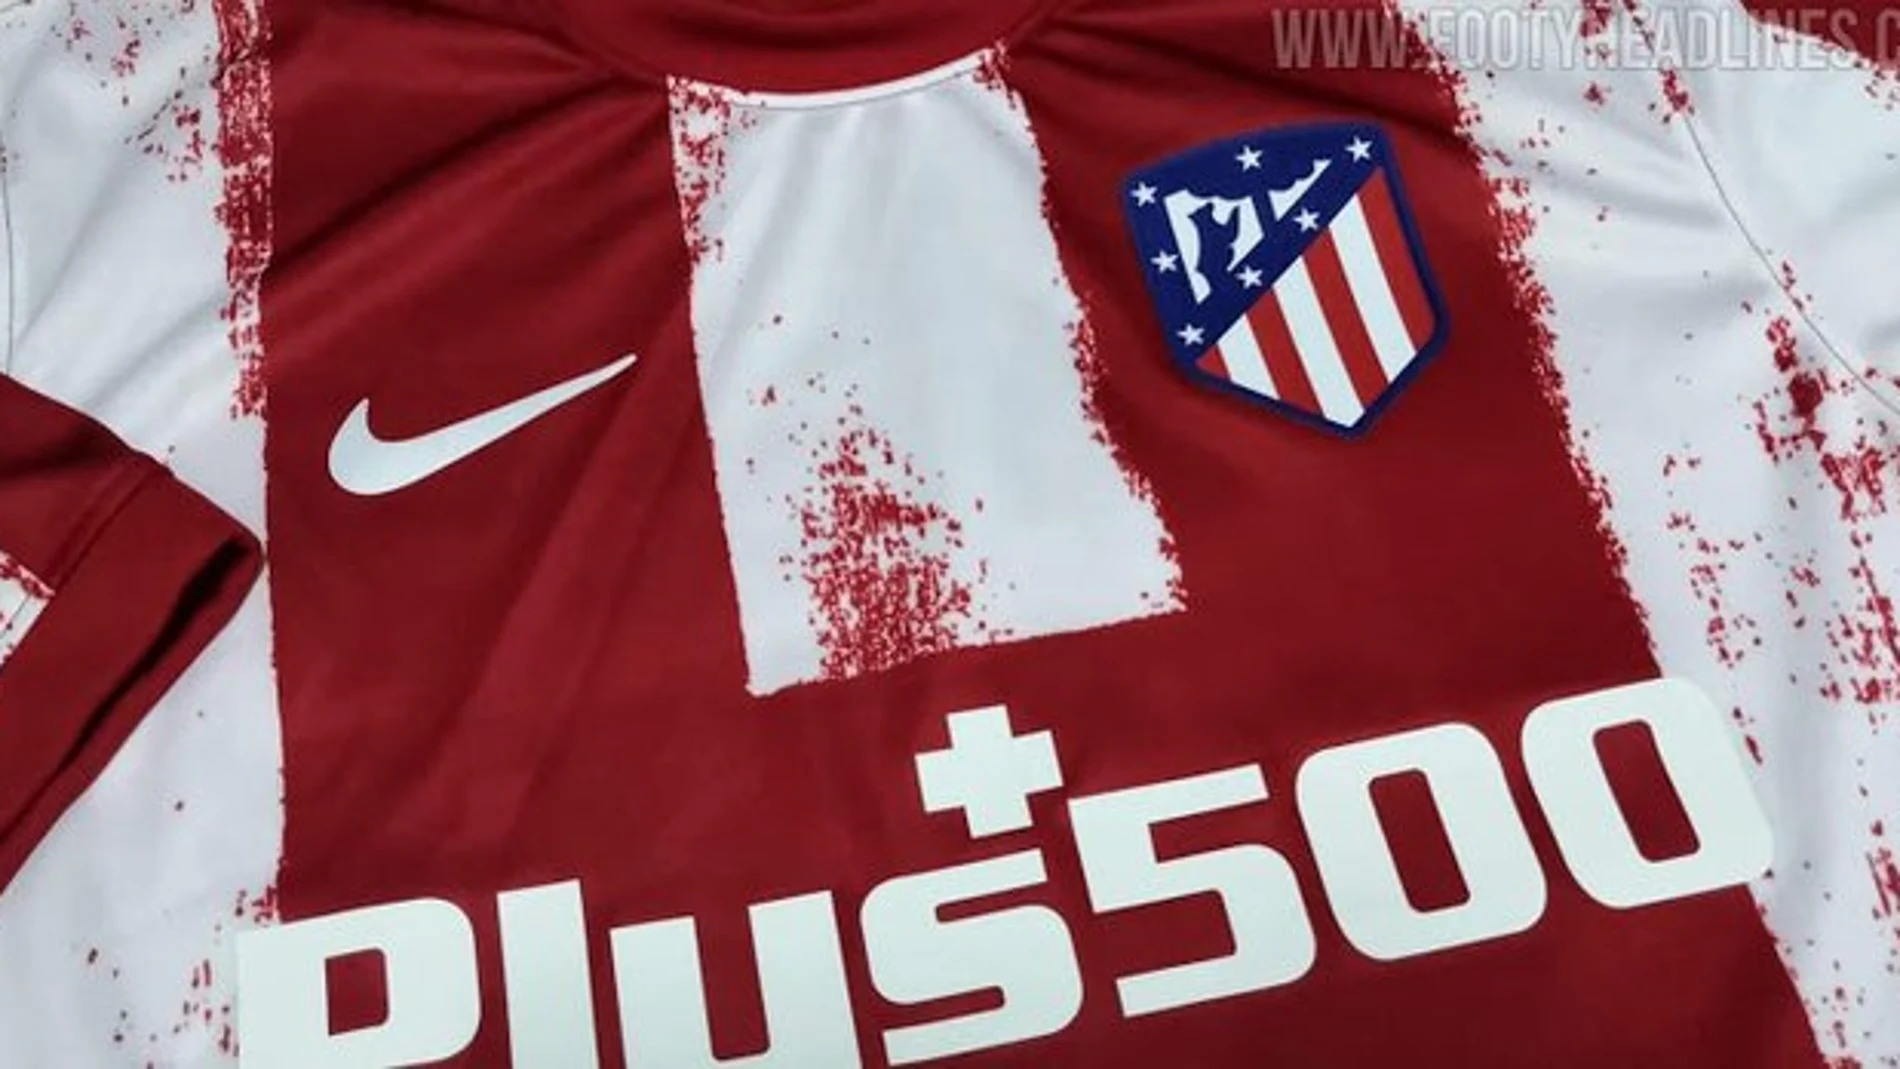 Filtrada la camiseta del Atlético de Madrid para la próxima temporada